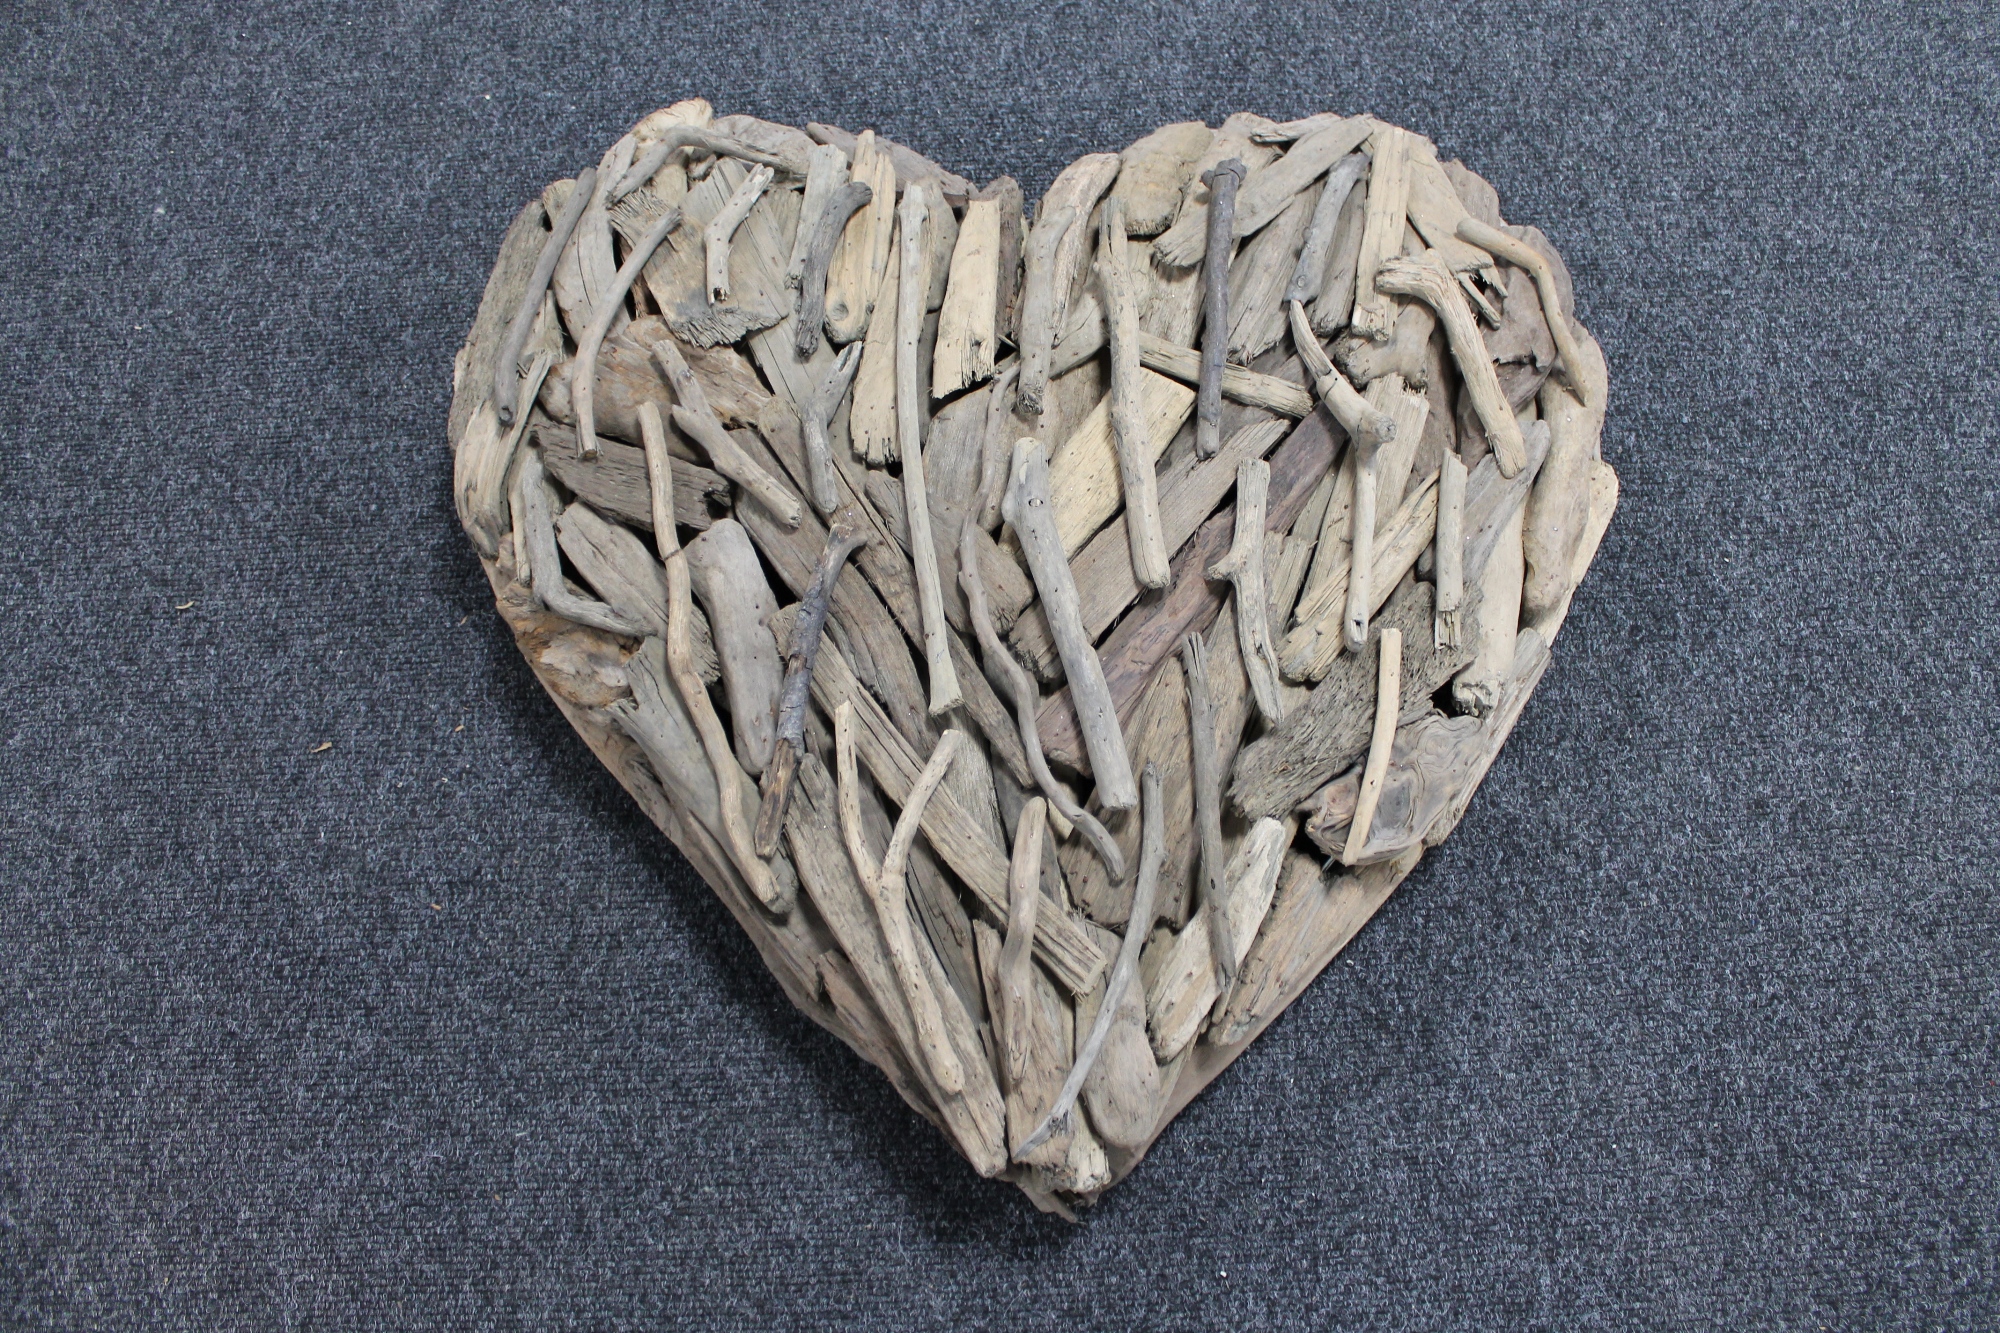 A driftwood heart